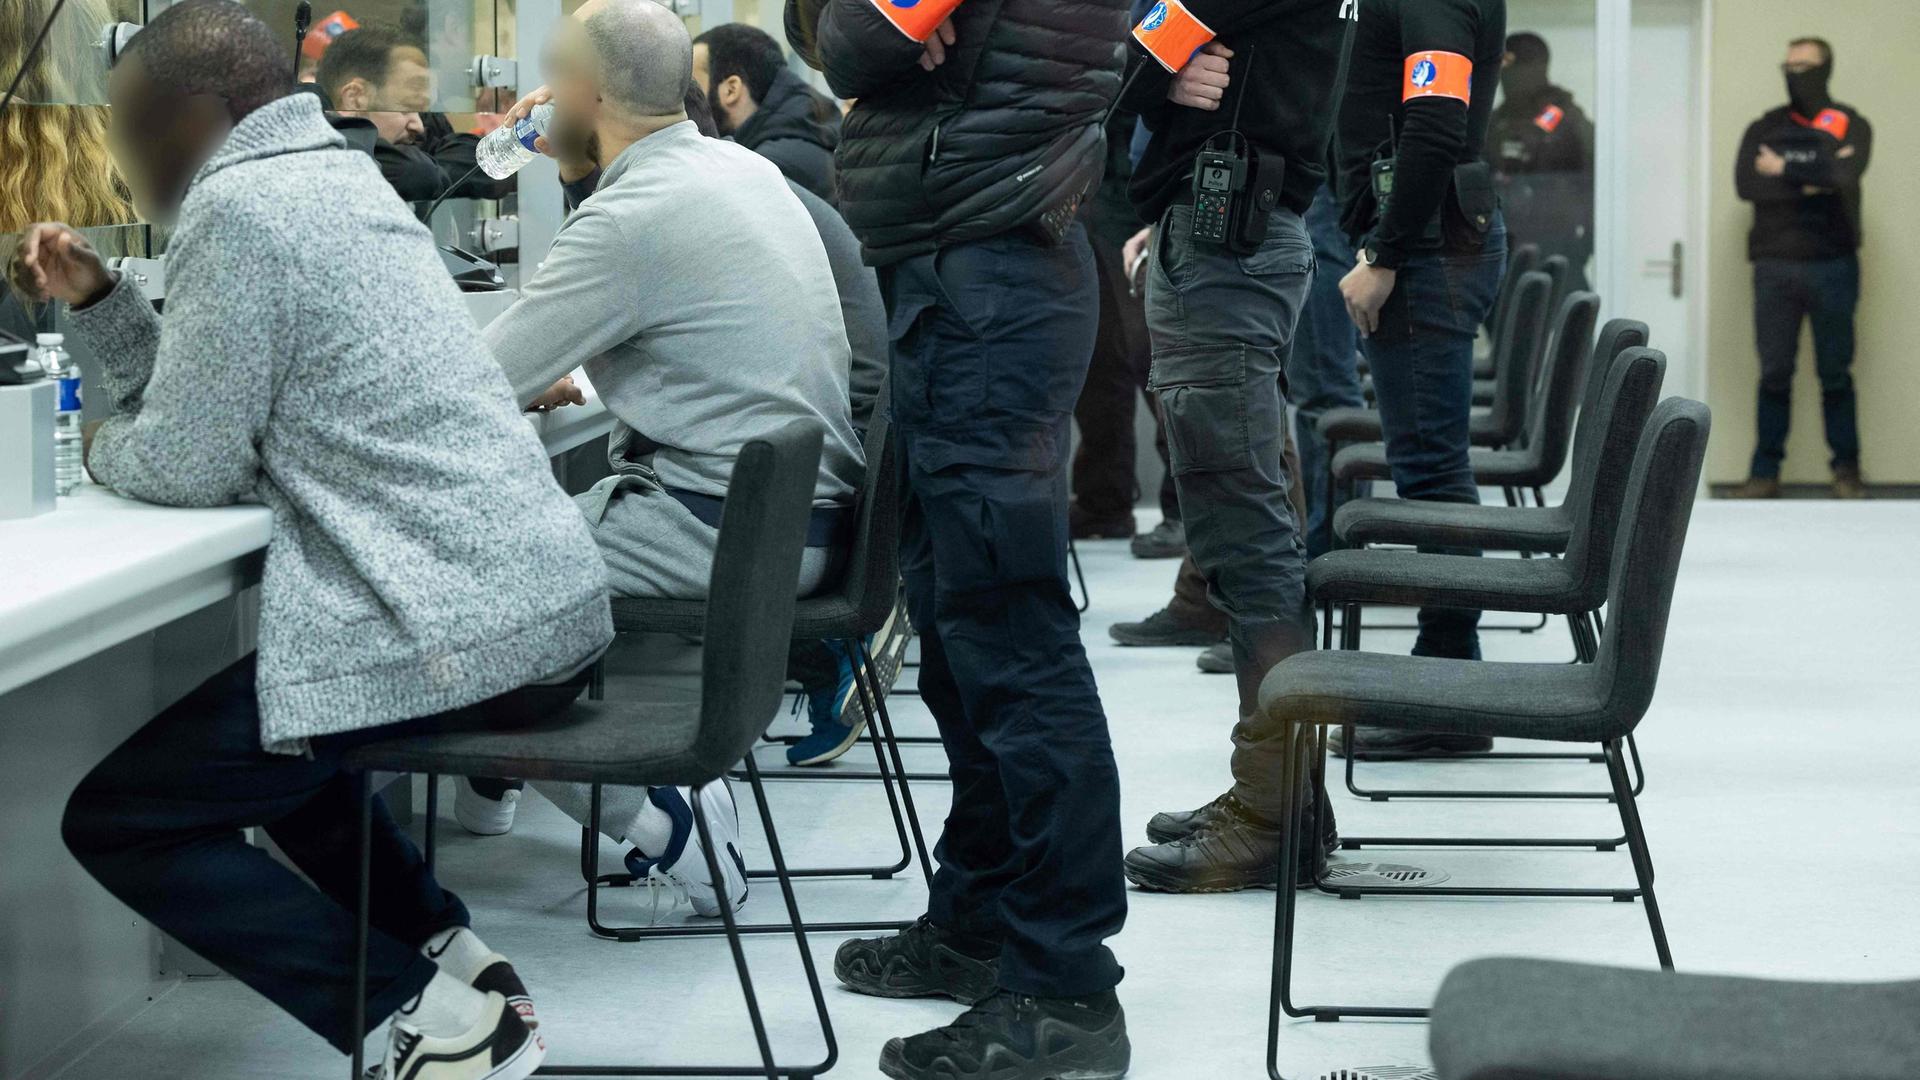 Un policier est posté derrière chaque accusé du procès des attentats de Bruxelles.